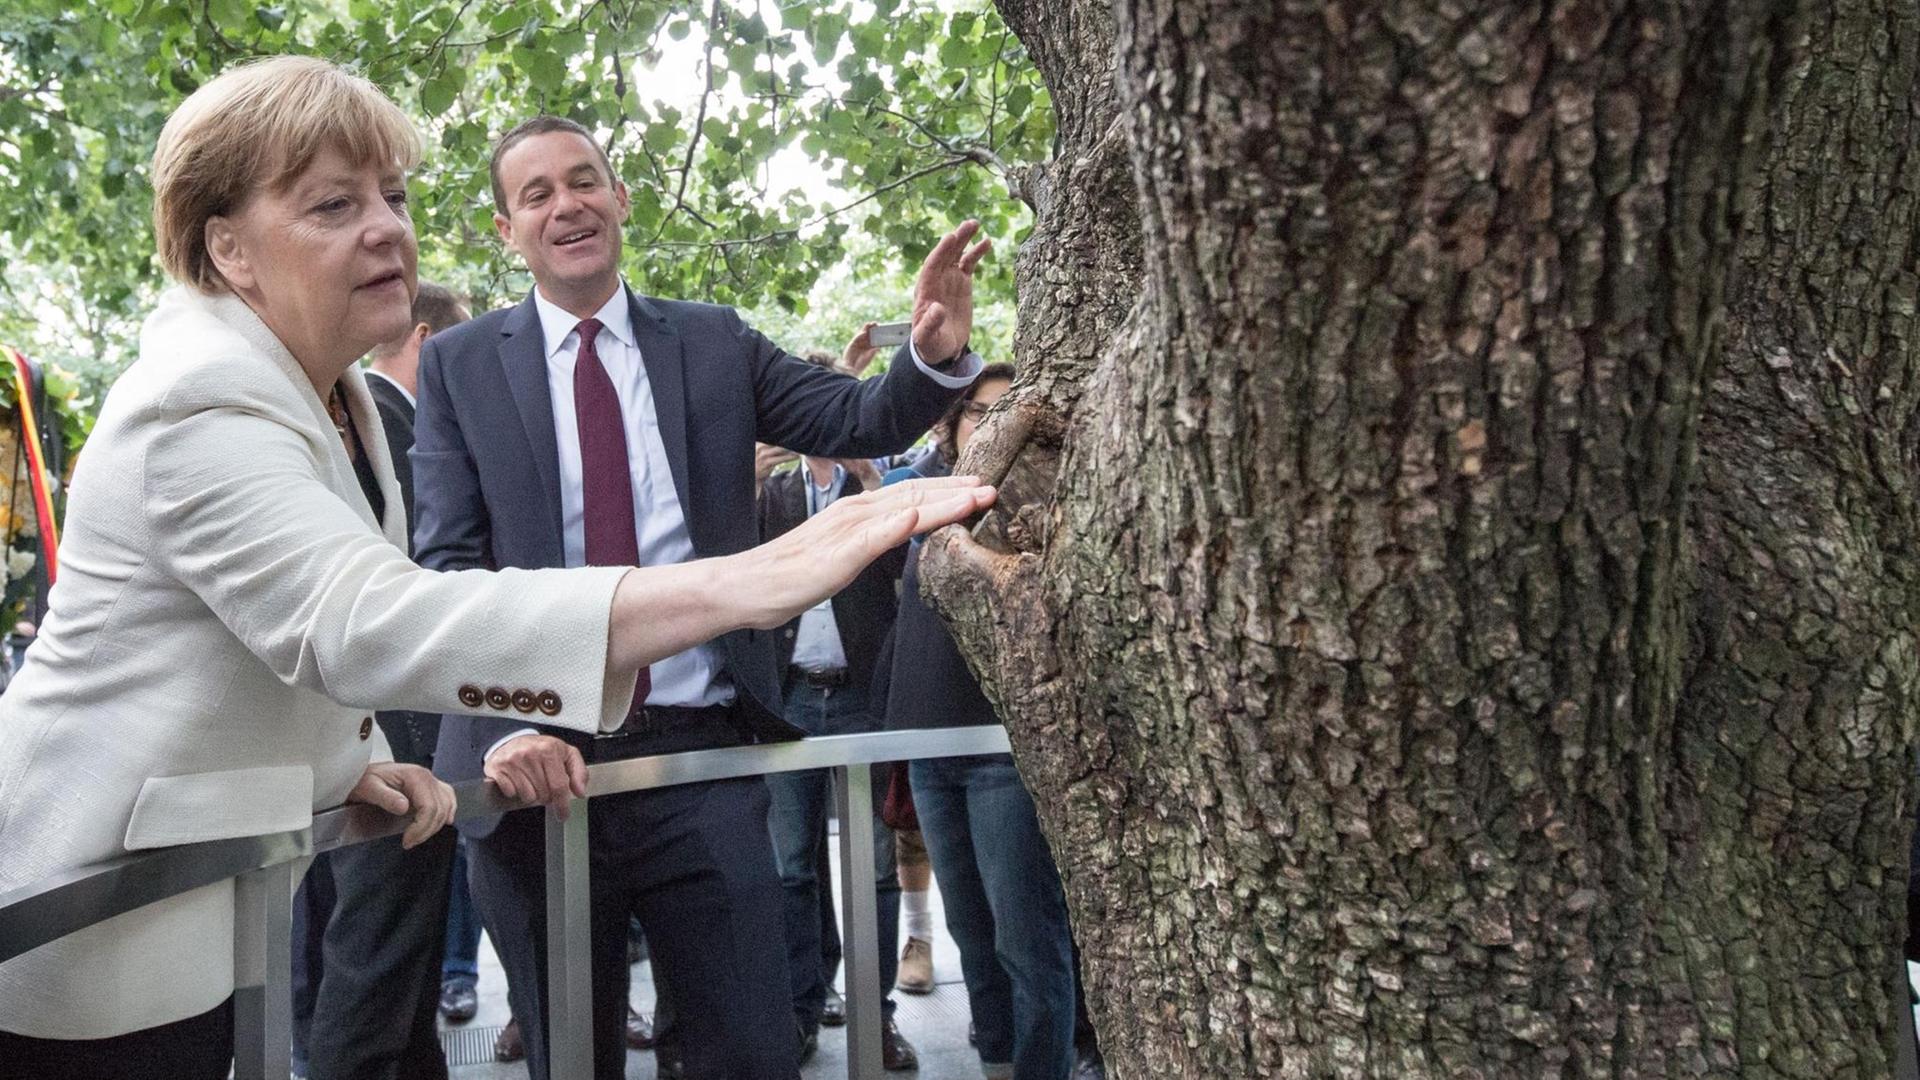 Bundeskanzlerin Angela Merkel (CDU) schaut sich am Ground Zero Memorial zusammen am 26.09.2015 in New York den Survivor Tree an.